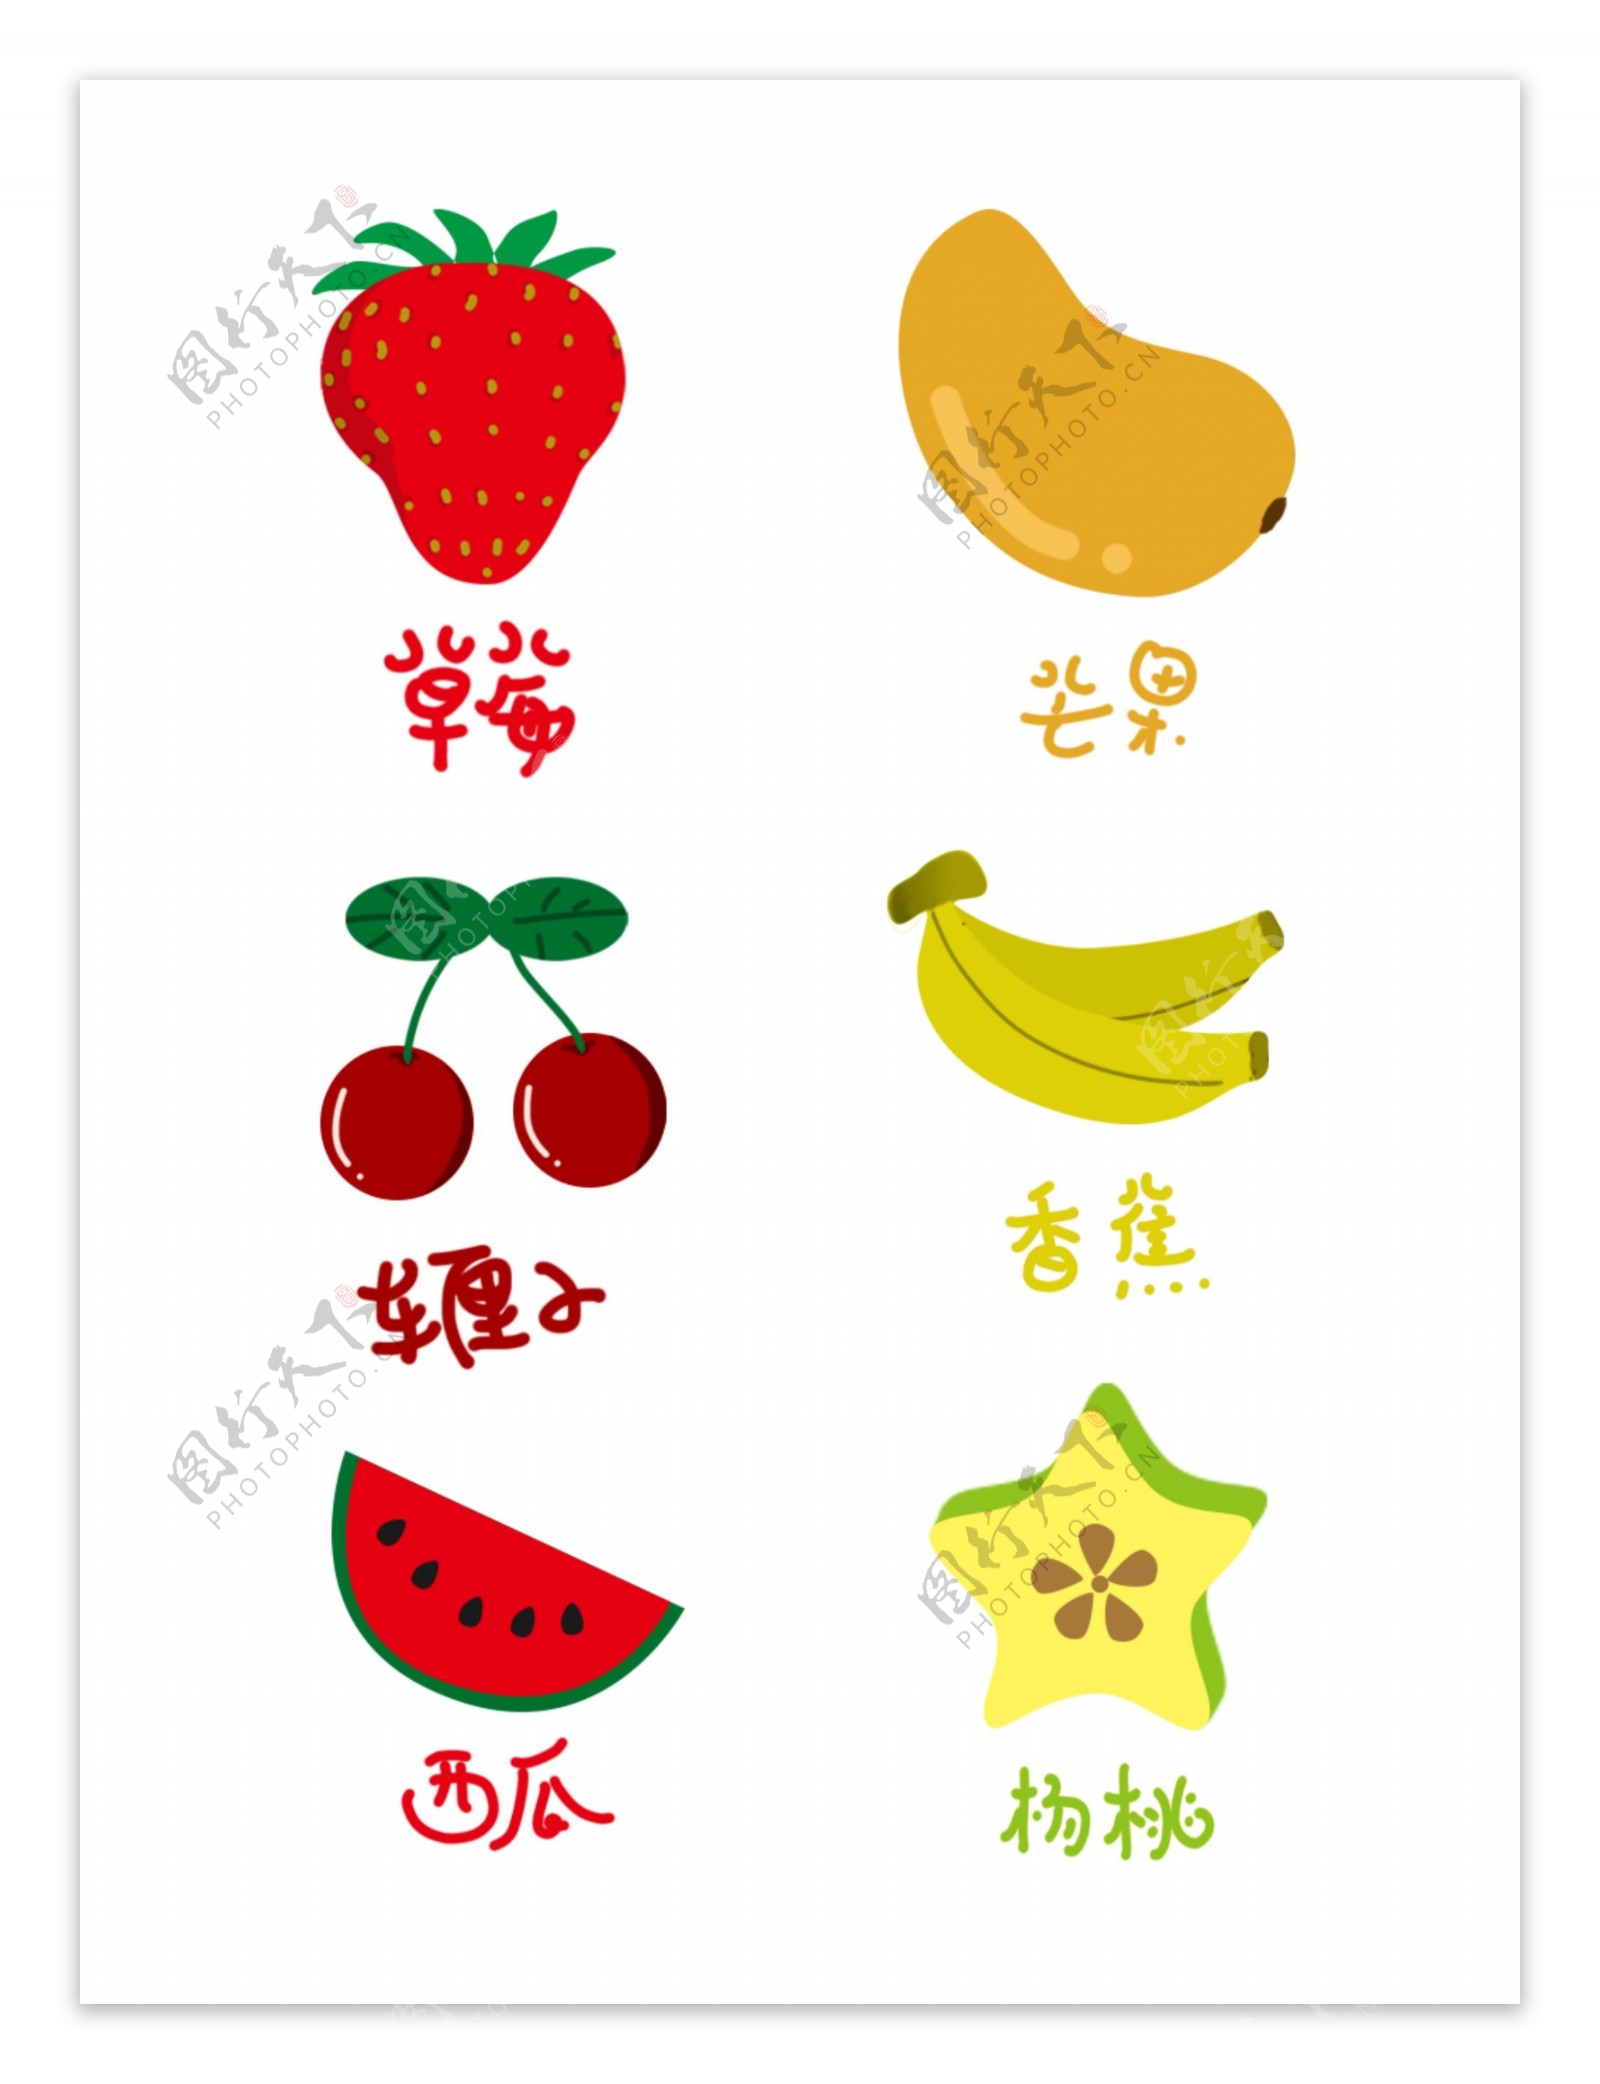 四月水果素材草莓芒果车厘子香蕉西瓜杨桃